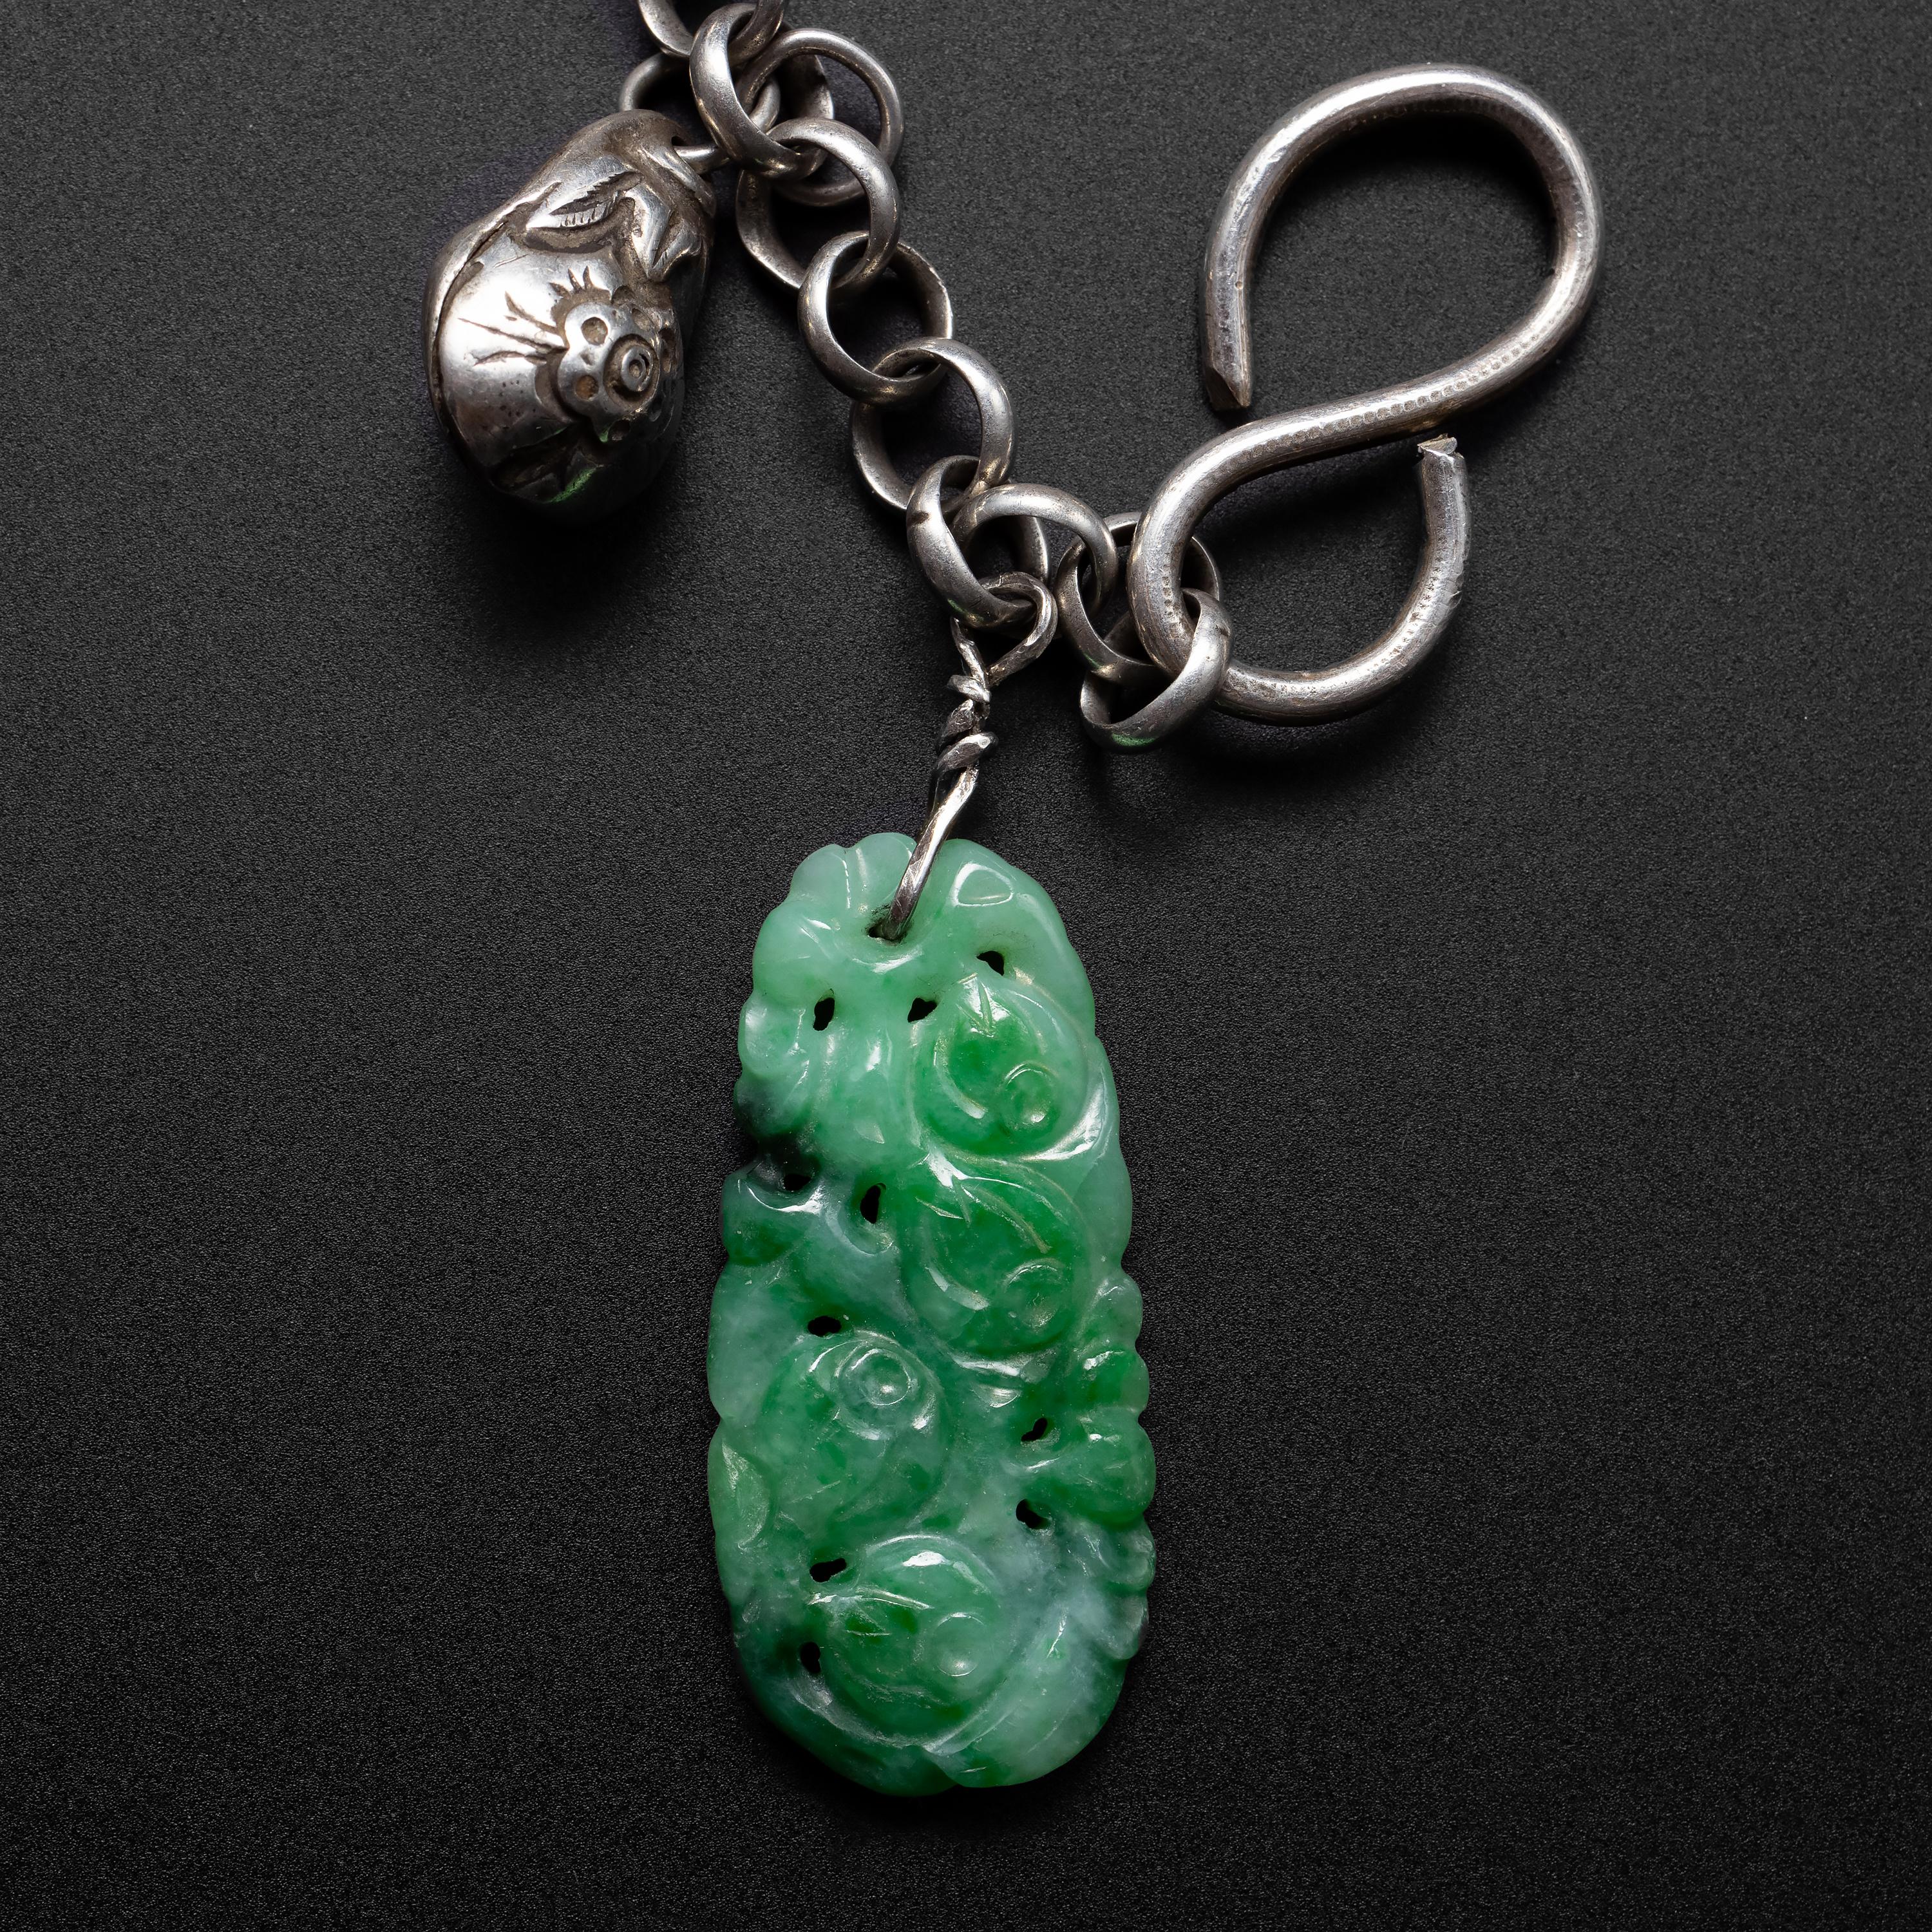 Uncut Antique Jade Charm Bracelet